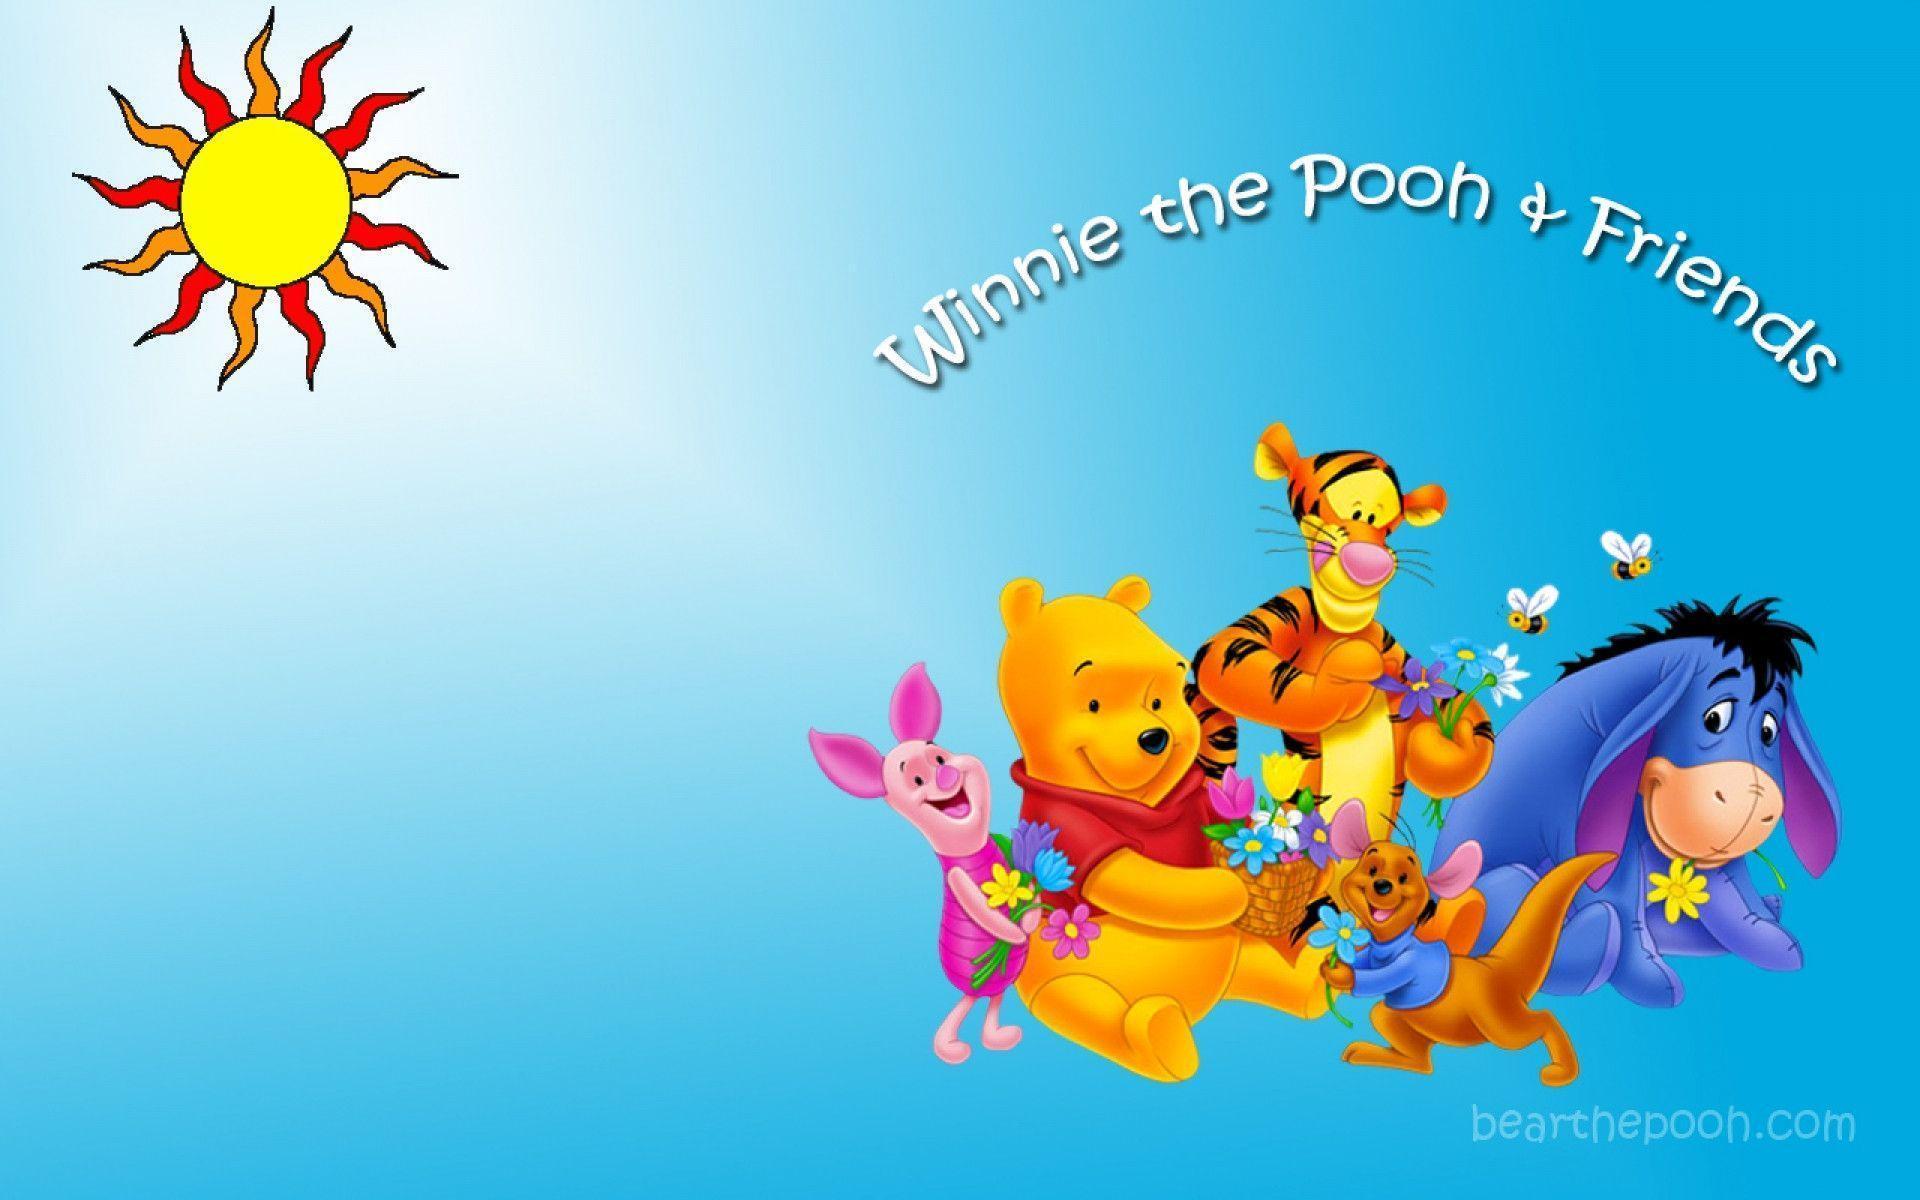 HD Pics Friendship Day Winnie The Pooh Friends Wallpaper, Free